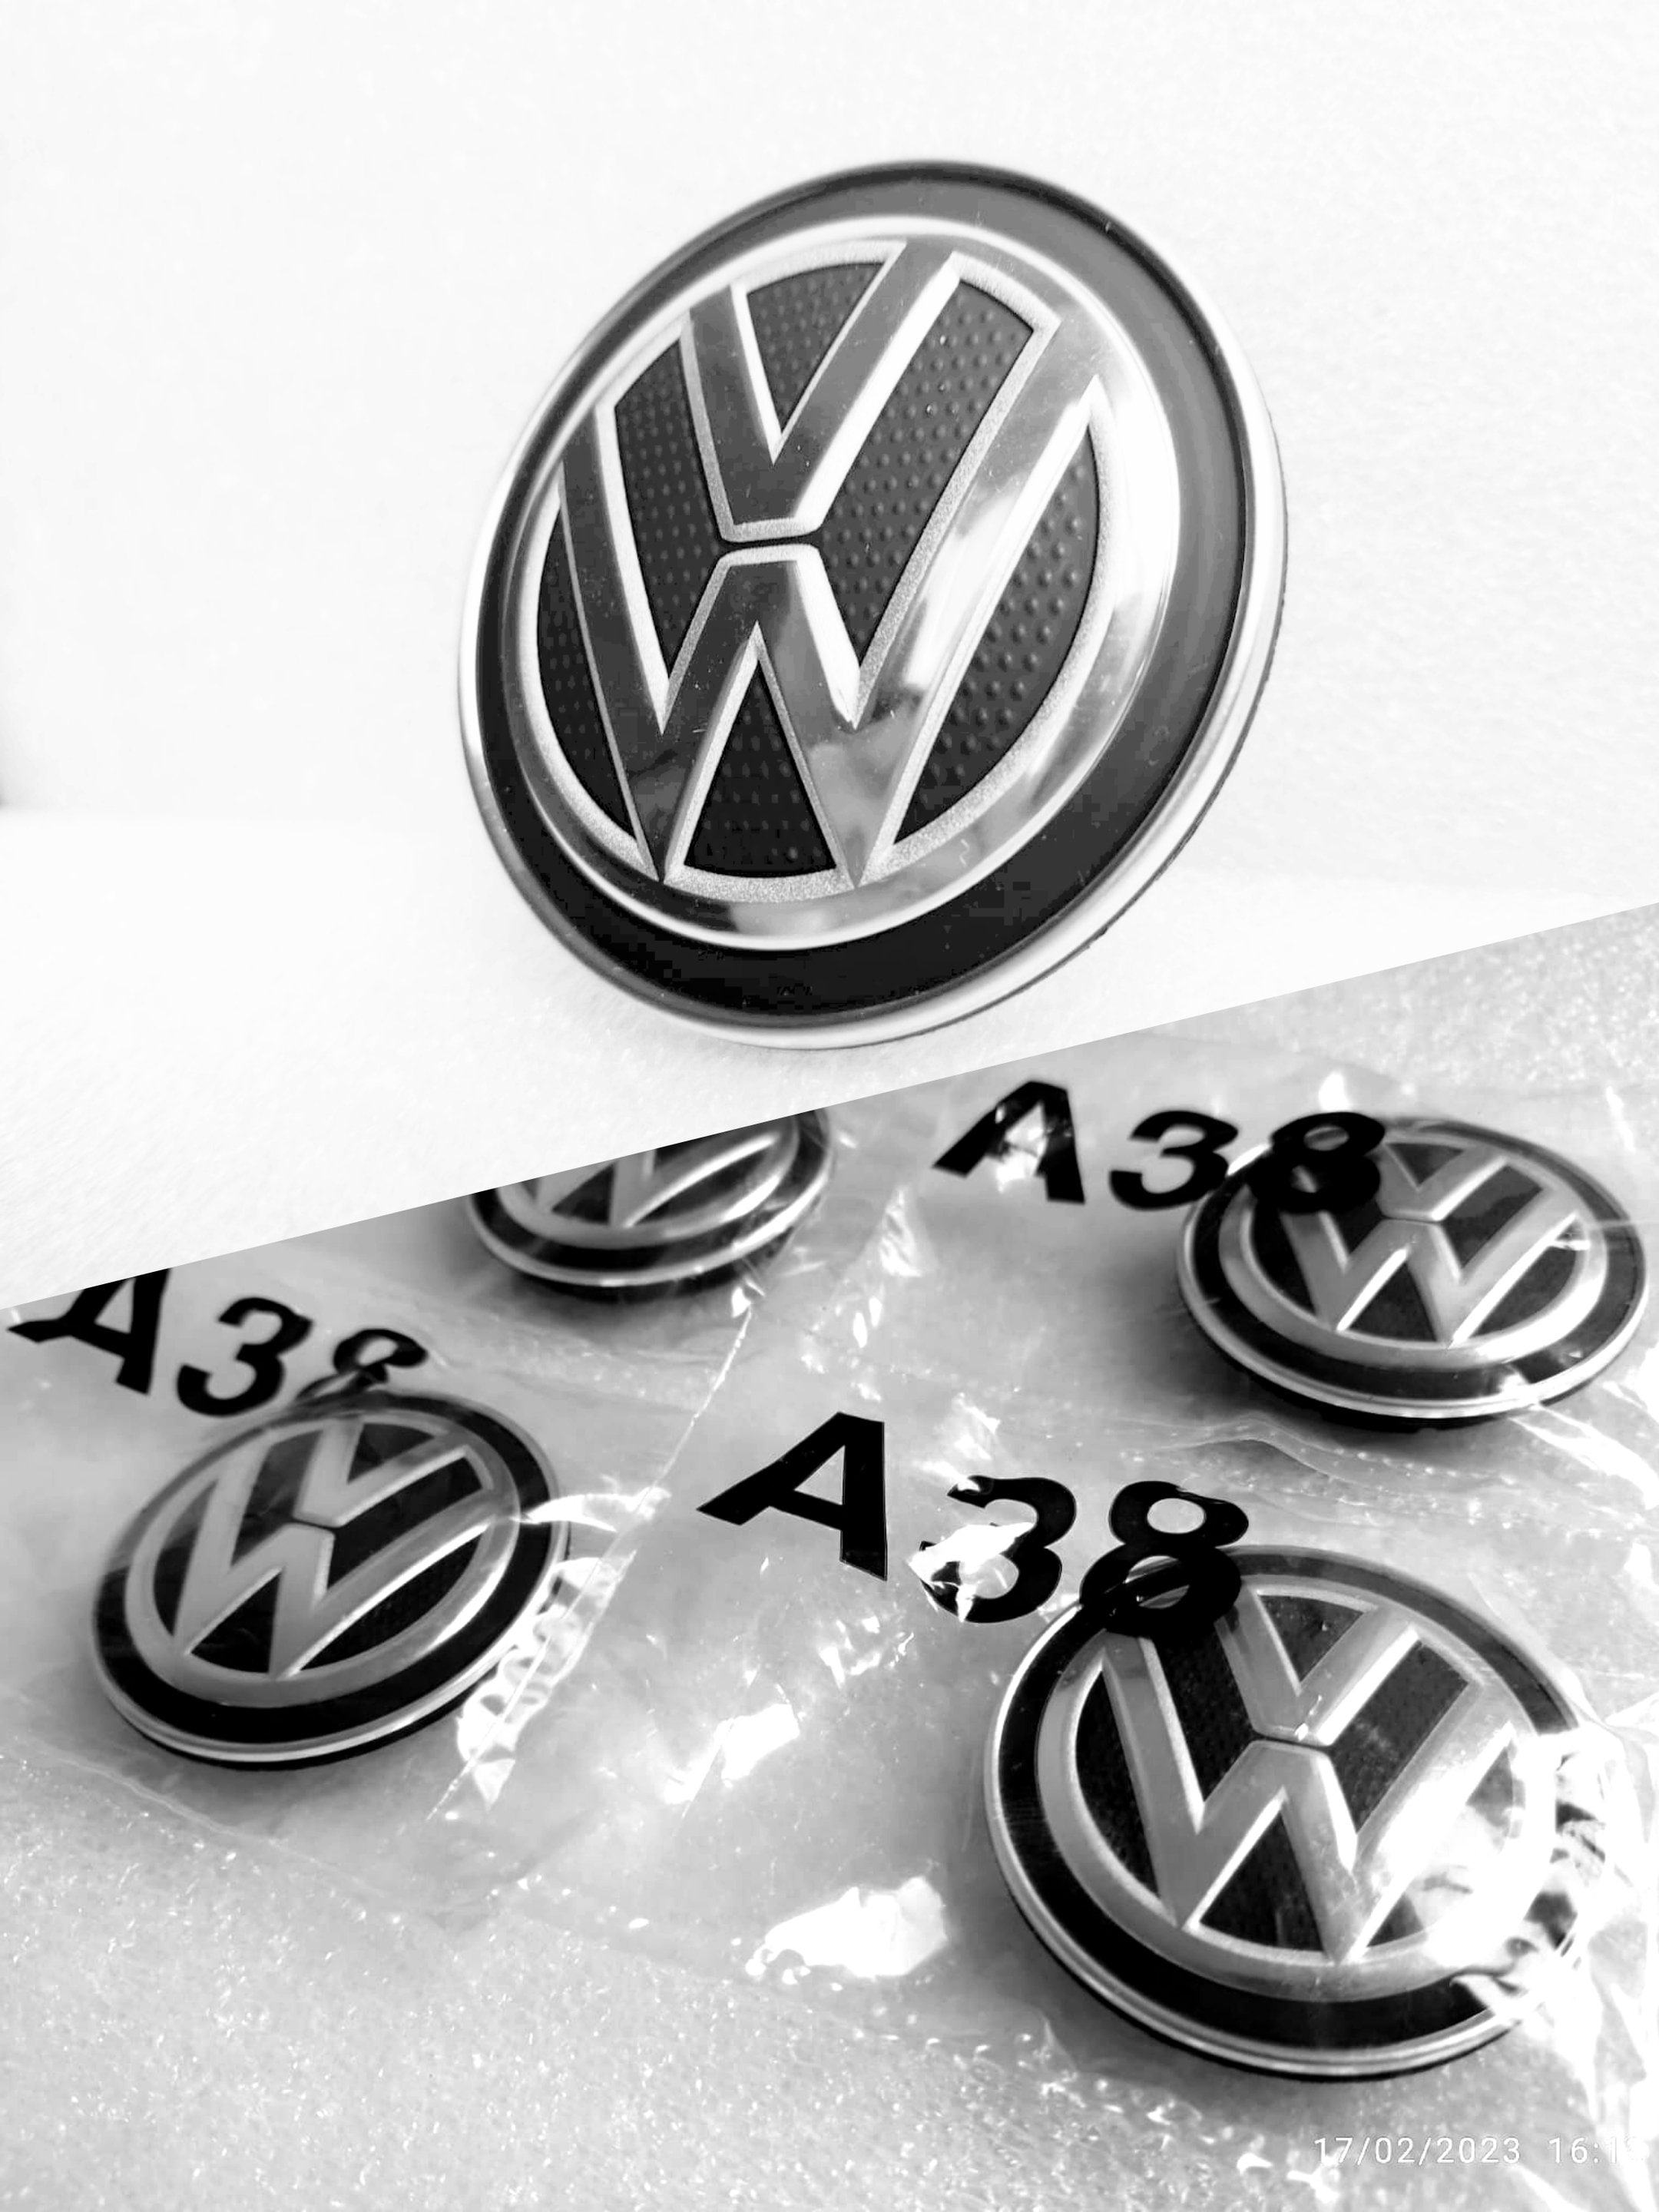 Enjoliveurs de roue VW Golf 7 / Golf Sportsvan 15 pouces, accessoire  d'origine Volkswagen.